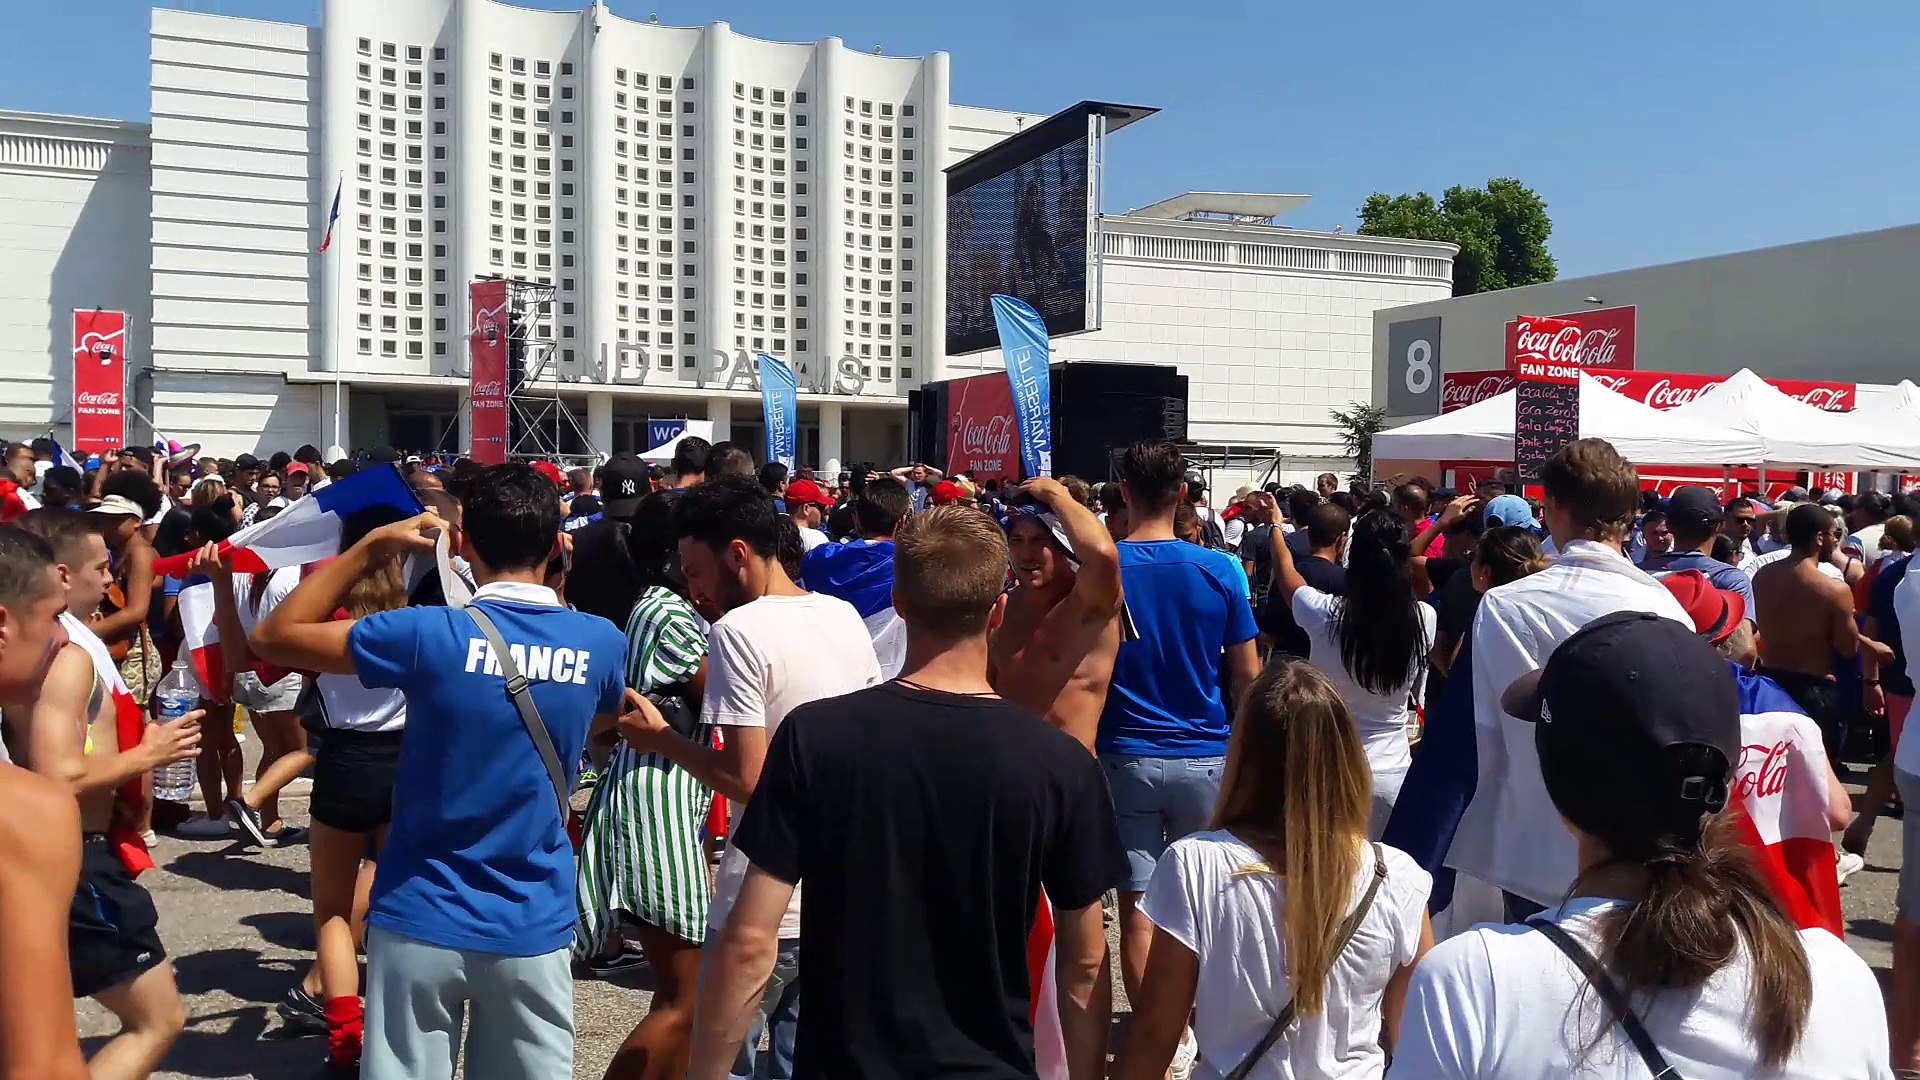 Des milliers de supporters sont déjà au Parc Chanot. - Vidéo Dailymotion